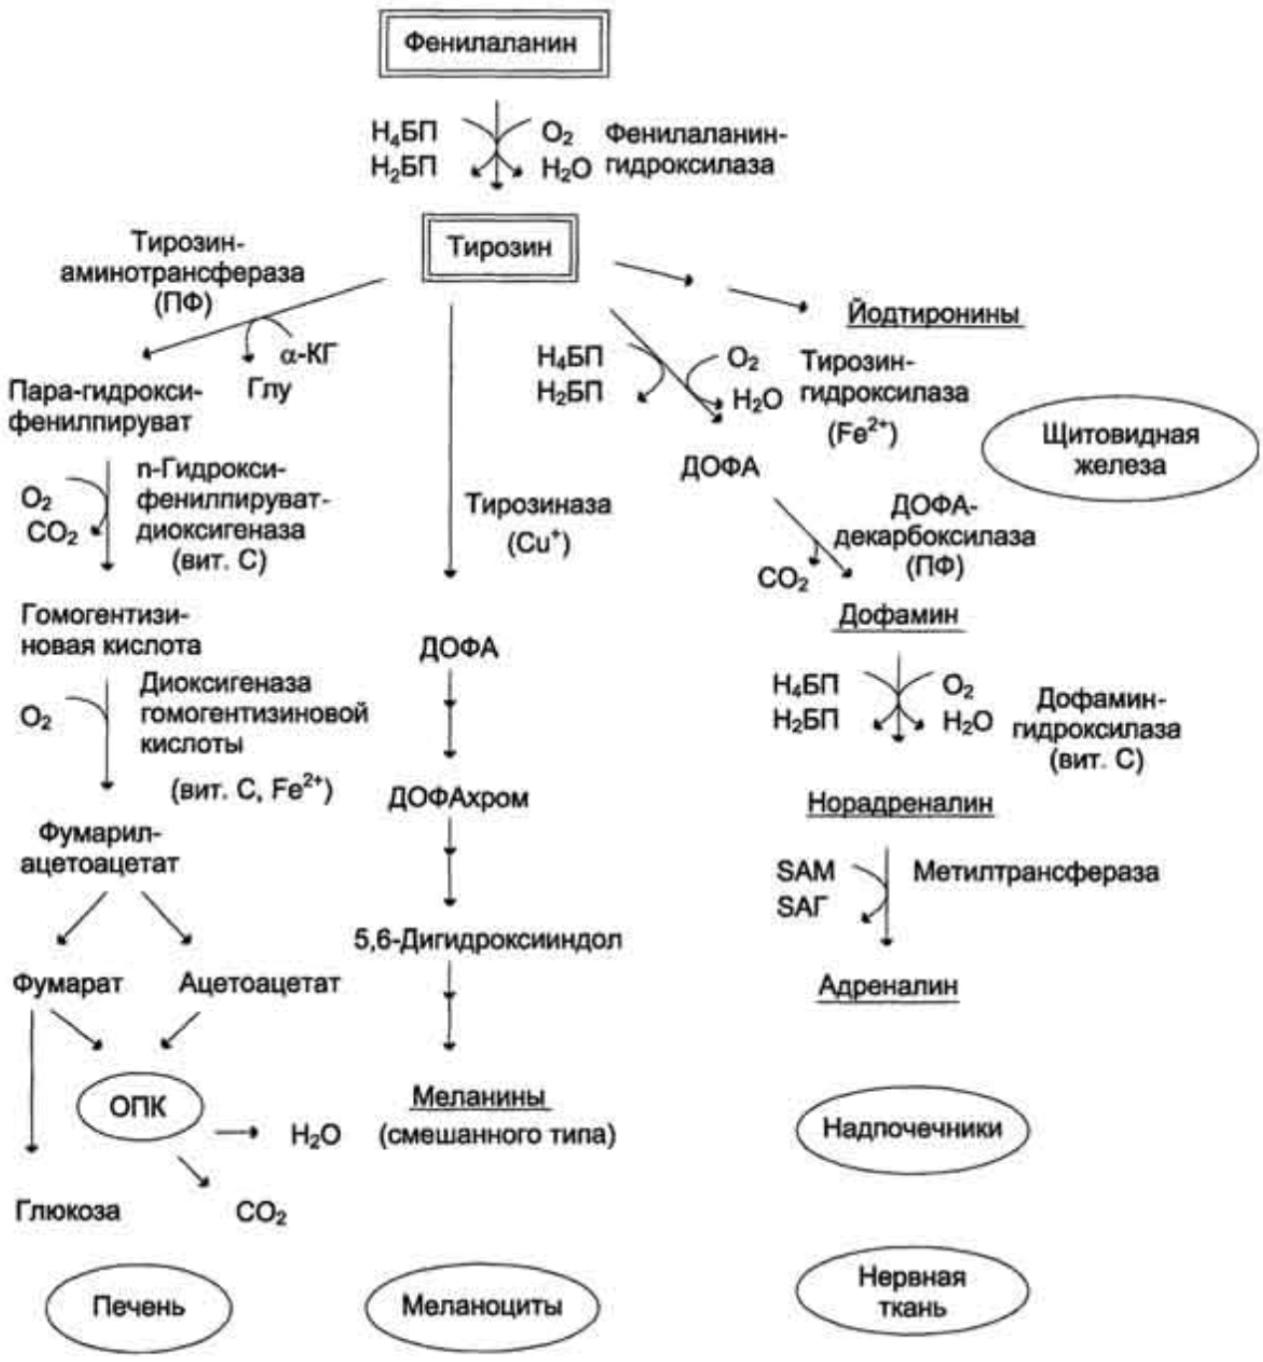 Обмен белков в печени. Пути превращения фенилаланина и тирозина. Схема метаболизма тирозина. Основные катаболические превращения фенилаланина и тирозина. Метаболизм фенилаланина и тирозина.